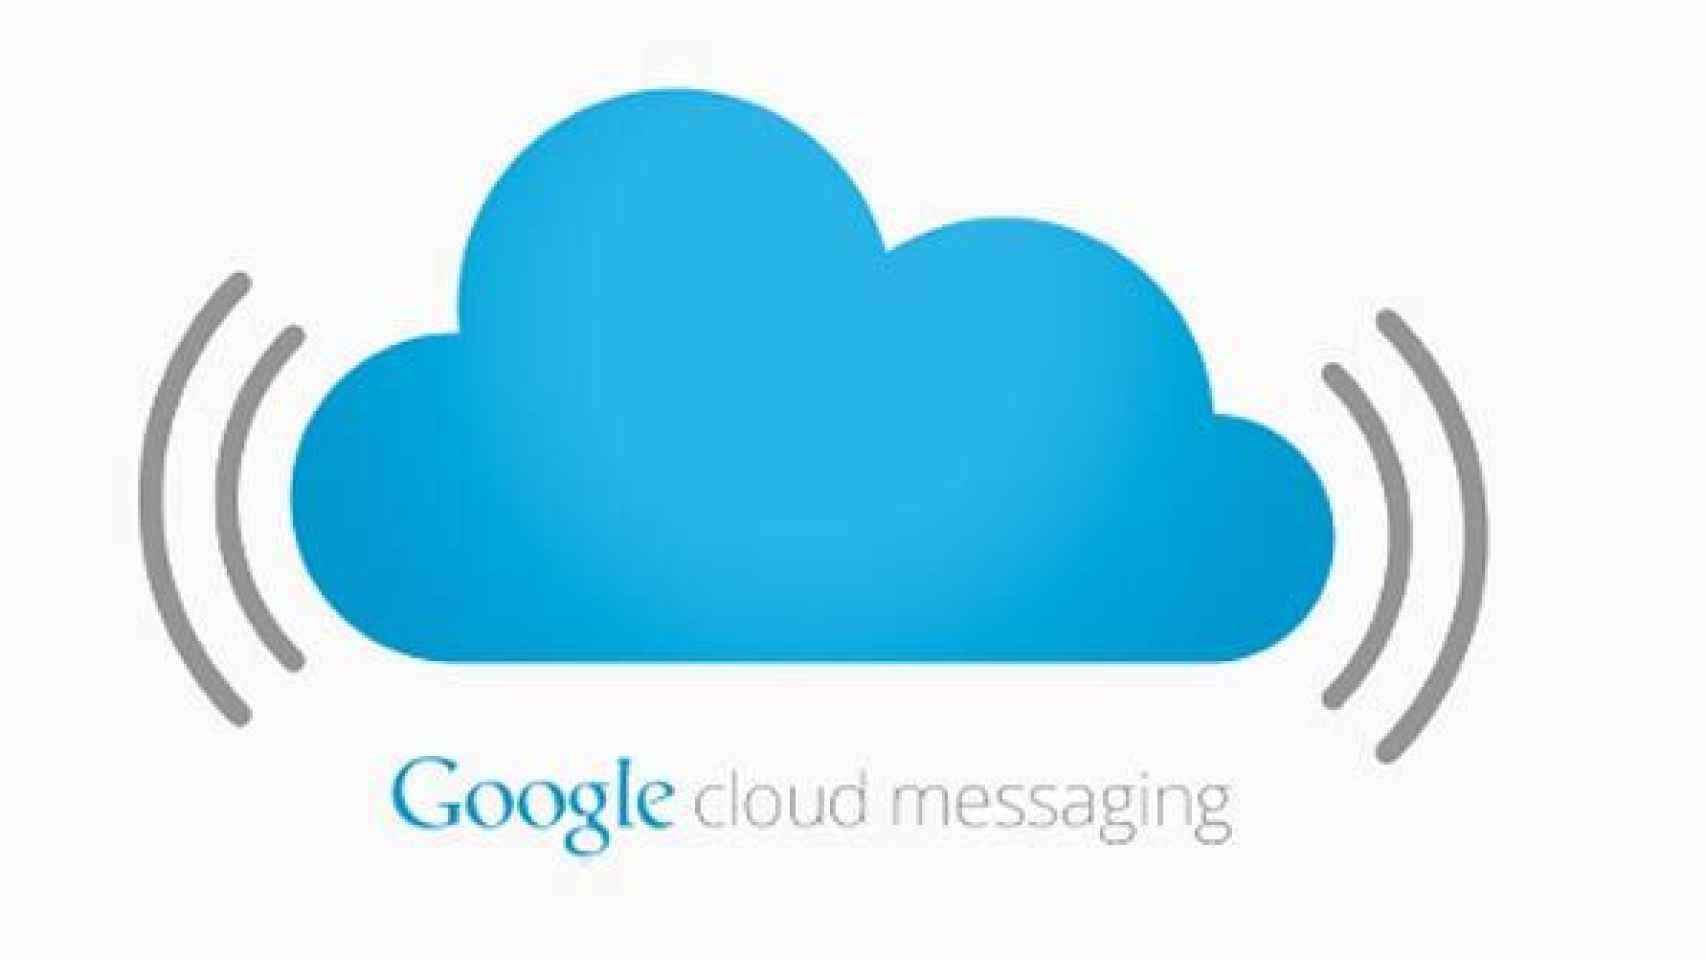 Google Cloud Messaging abierto a desarrolladores